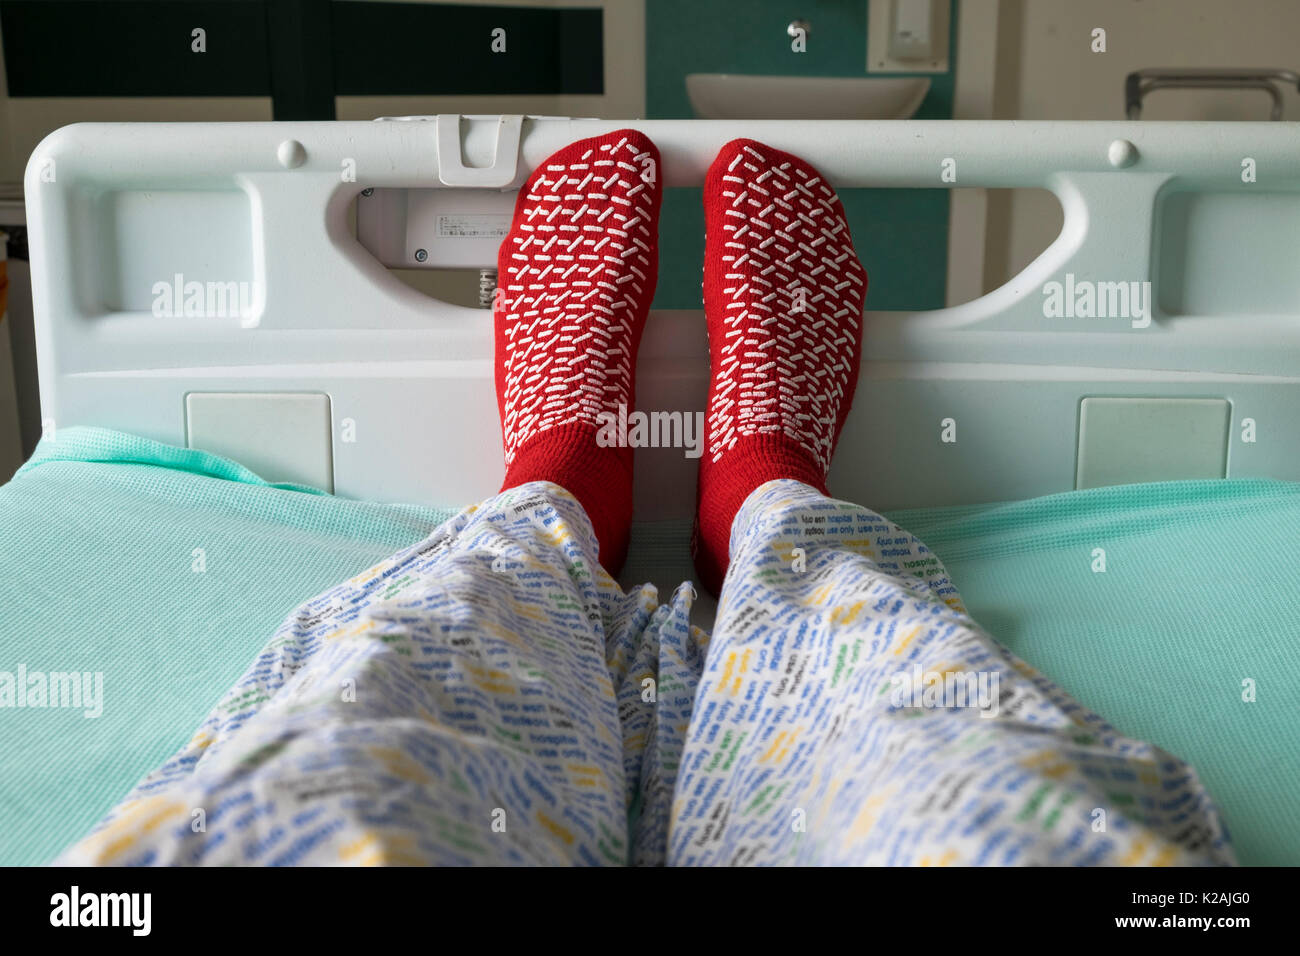 Paciente acostado en una cama de hospital con uso hospitalario solo partes de abajo de pijama y calcetines antideslizantes, sala de aislamiento, reino unido Foto de stock